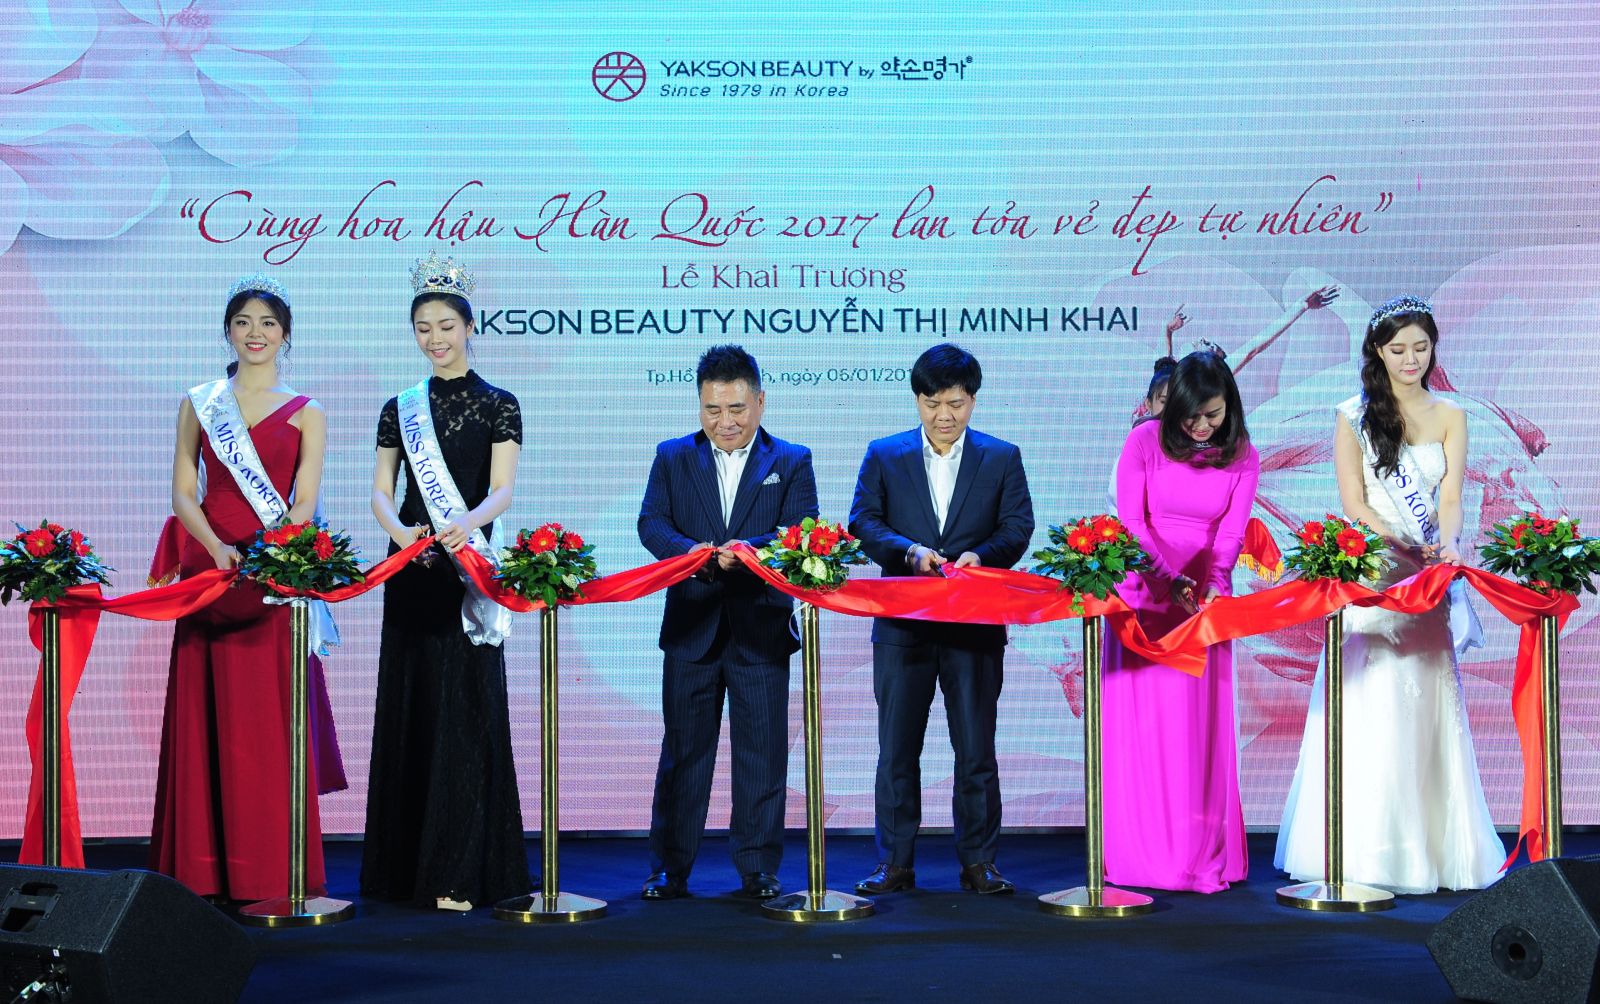 Ông Lee Byung – Chulp/Chủ tịch Yakson Myungga Hàn Quốc và ông Nguyễn Ngọc Thủy Chủ tịch HĐQT Yakson Beauty cùng các Hoa Hậu xứ Hàn cắt bang khai trương Trung tâm Yakson Beautyp/đầu tiên tại Tp. HCM